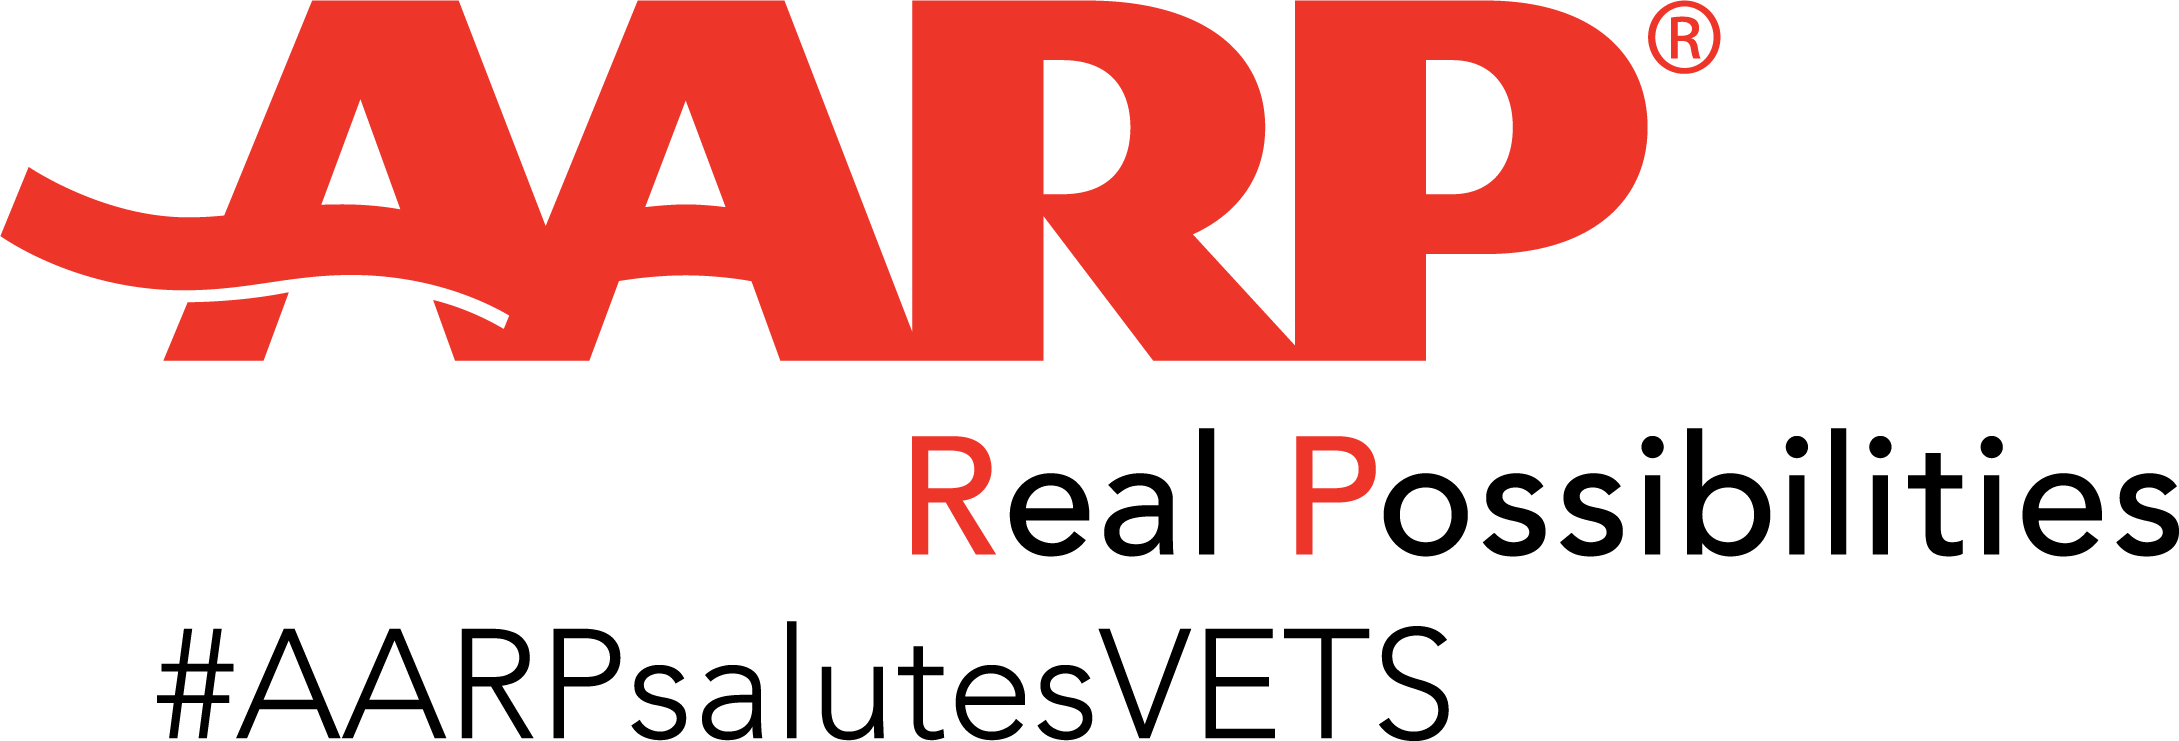 AARP_RP_vet hashtag